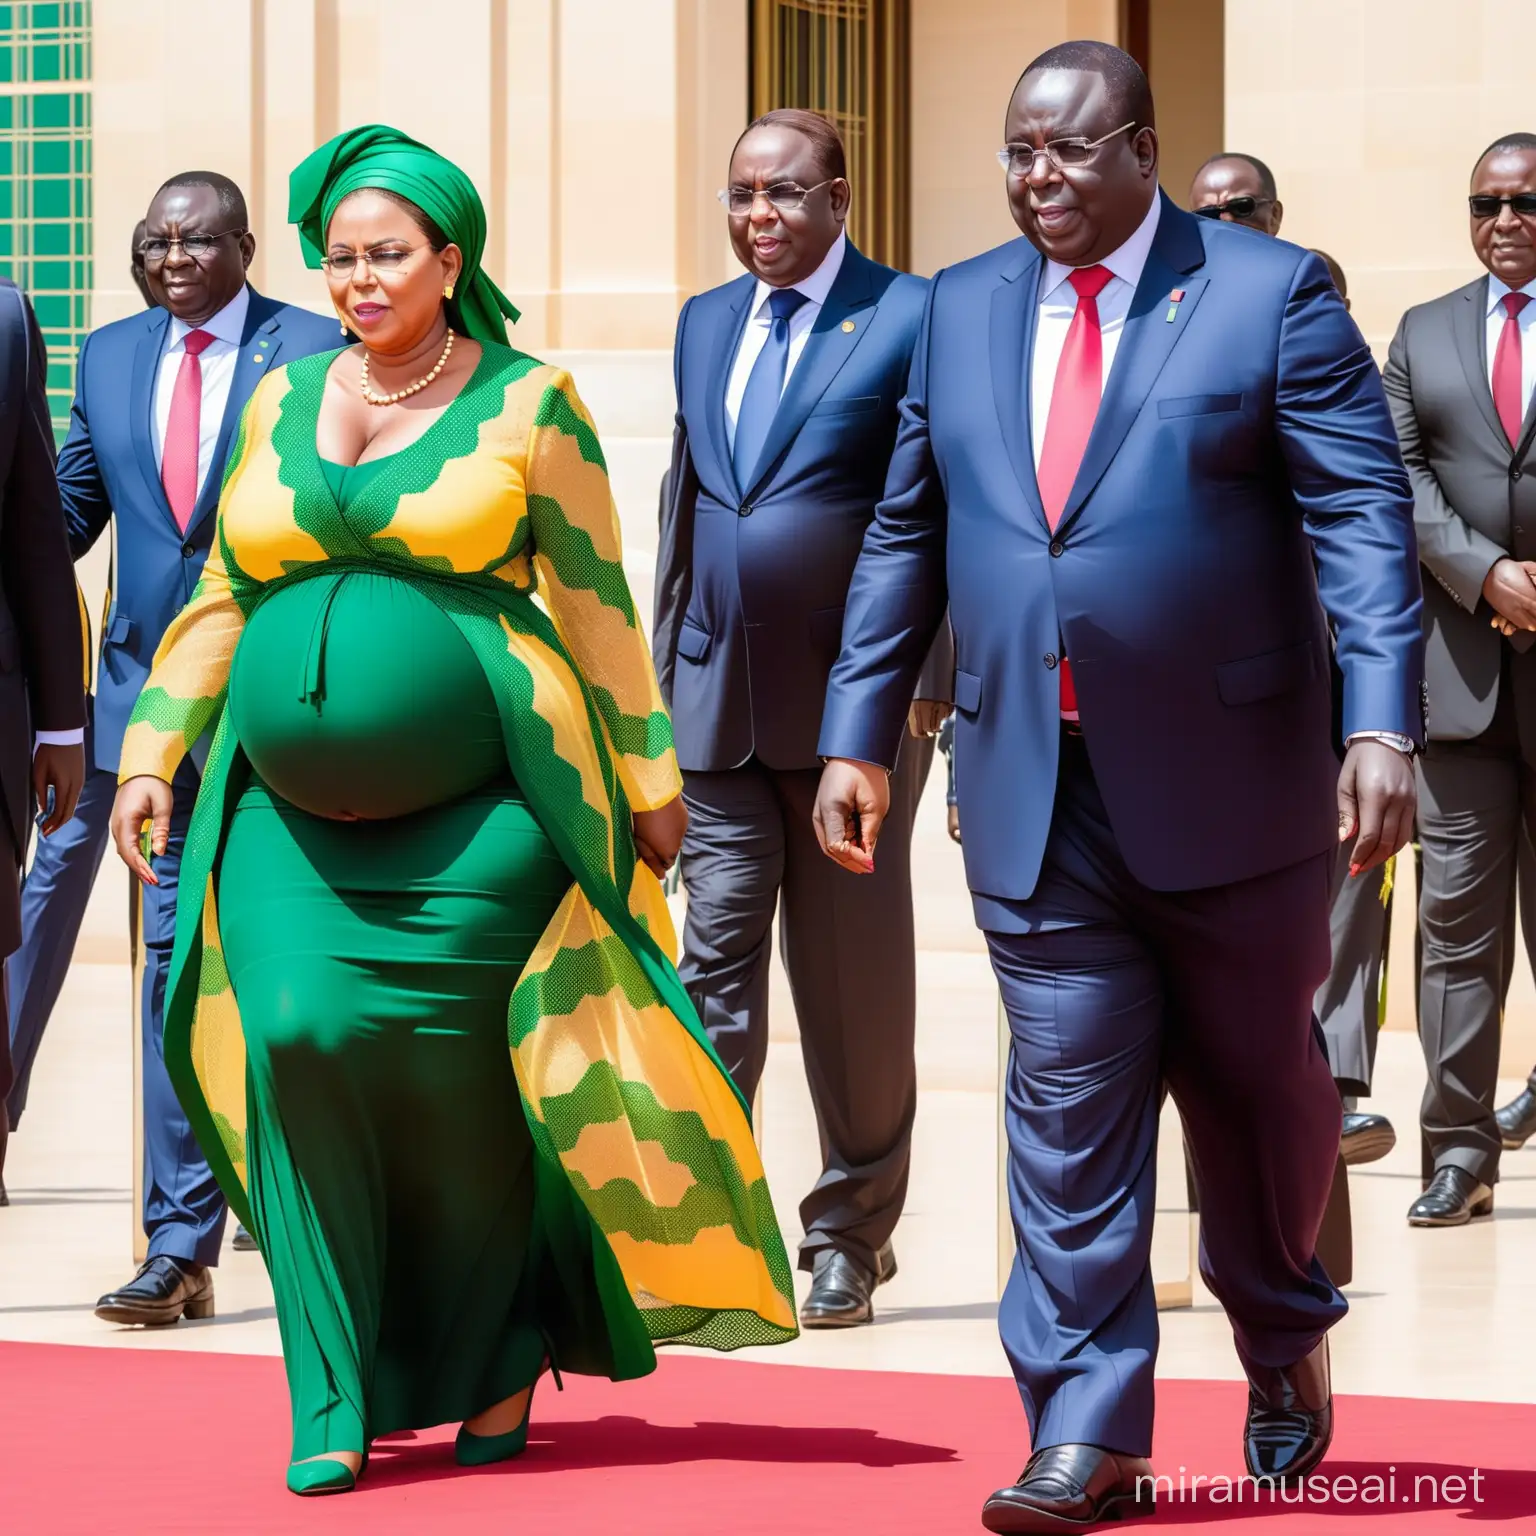 le président du Sénégal Macky SALL avec son gros ventre et sa femme entrain de quitter le palais présidentiel